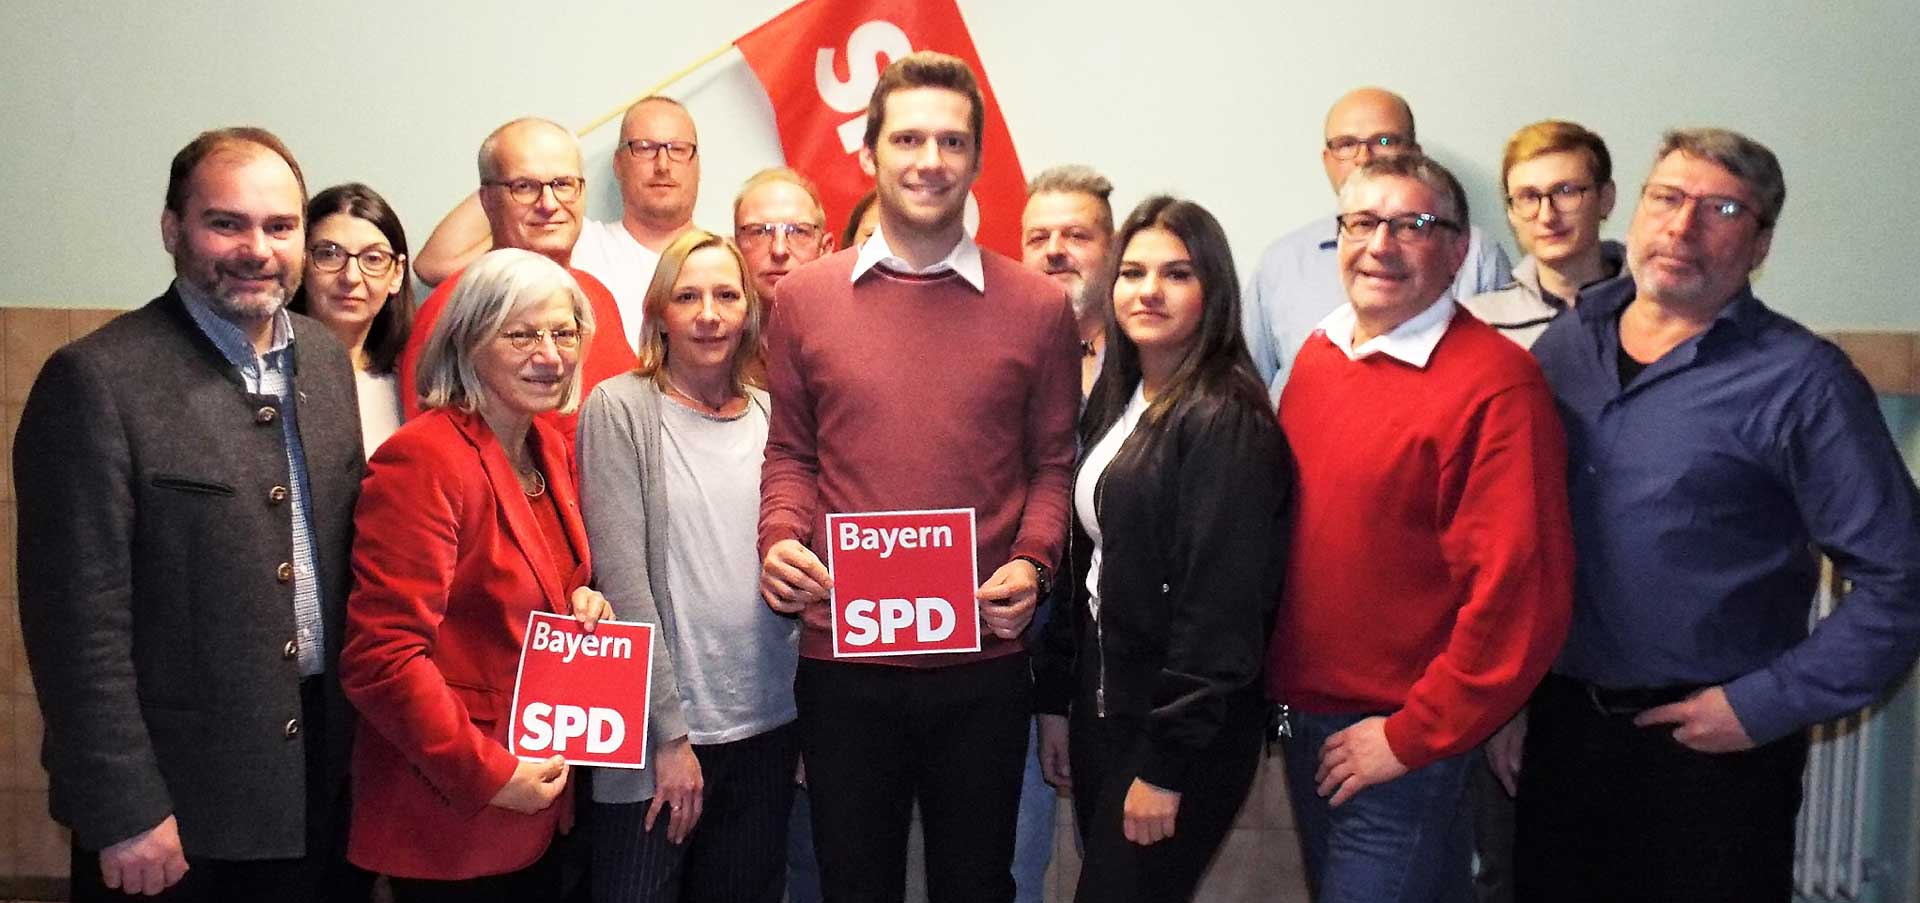 Die Teugner SPD-Gemeinderatskandidaten zur Kommunalwahl 2020 mit SPD-Landratskandidat Stephan Schweiger (1. vl. vorne), SPD-Unterbezirksvorsitzender Johanna Werner-Muggendorfer (2. v.l. vorne) sowie den frischgekürten Bürgermeisterkandidaten Daniel Listl (4. v.l. vorne) (Foto: Jehl/Böhme)